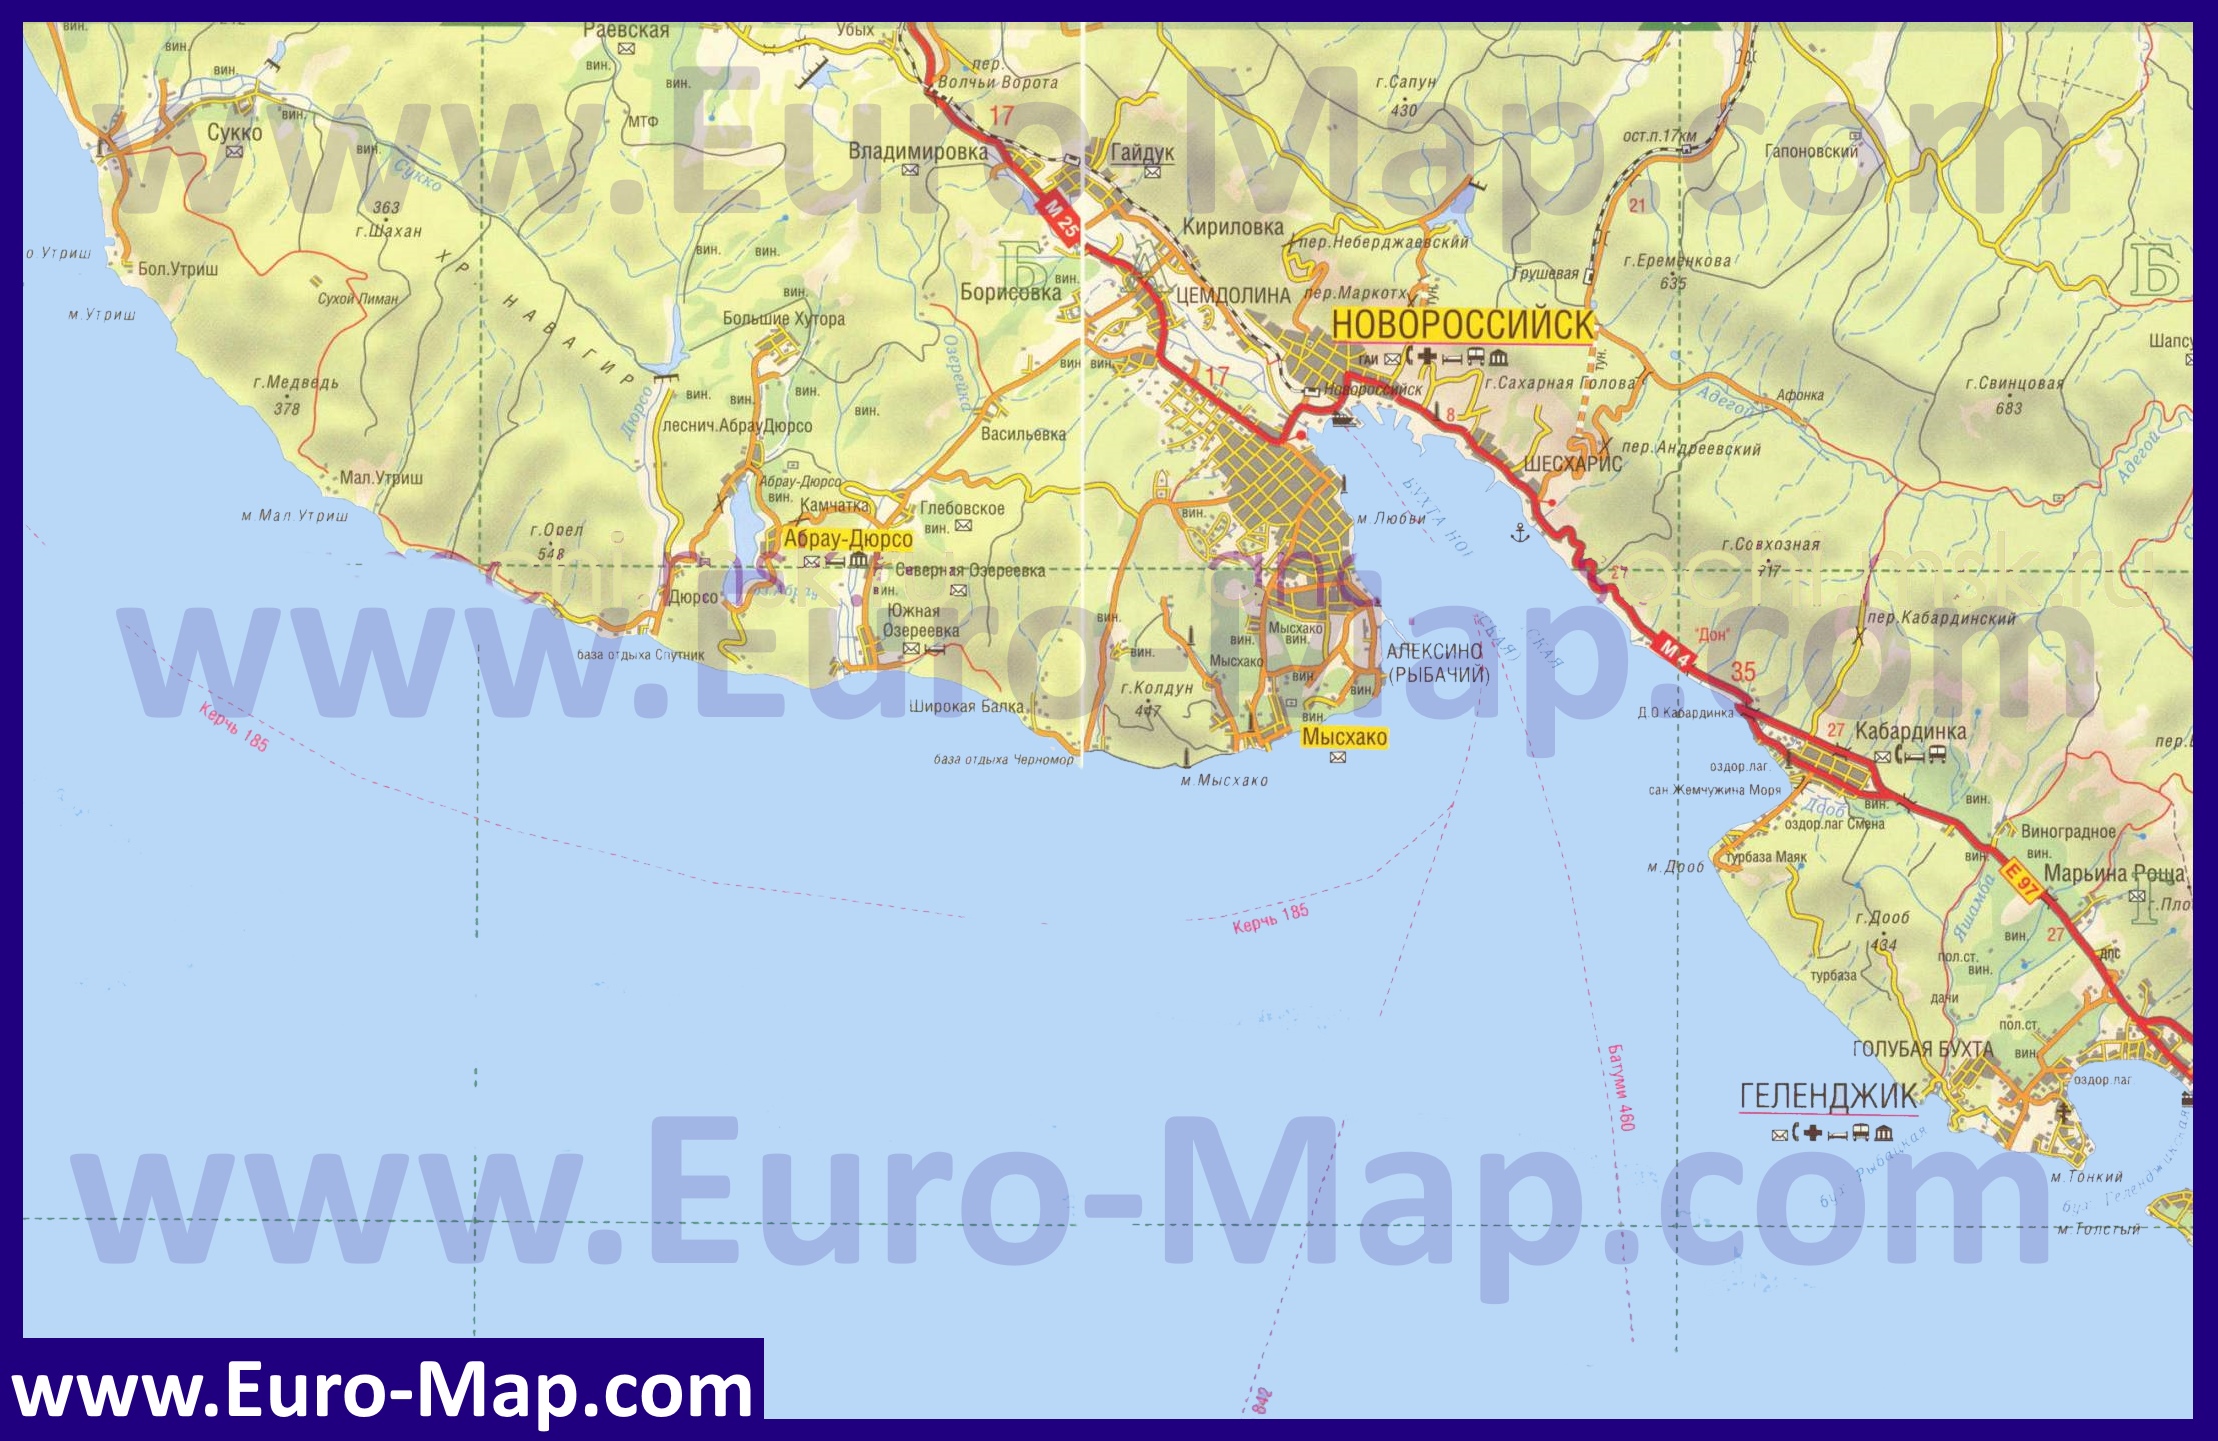 http://euro-map.com/karty-rossii/novorossiysk/karta-novorossiysk-s-okrestnostyami.jpg